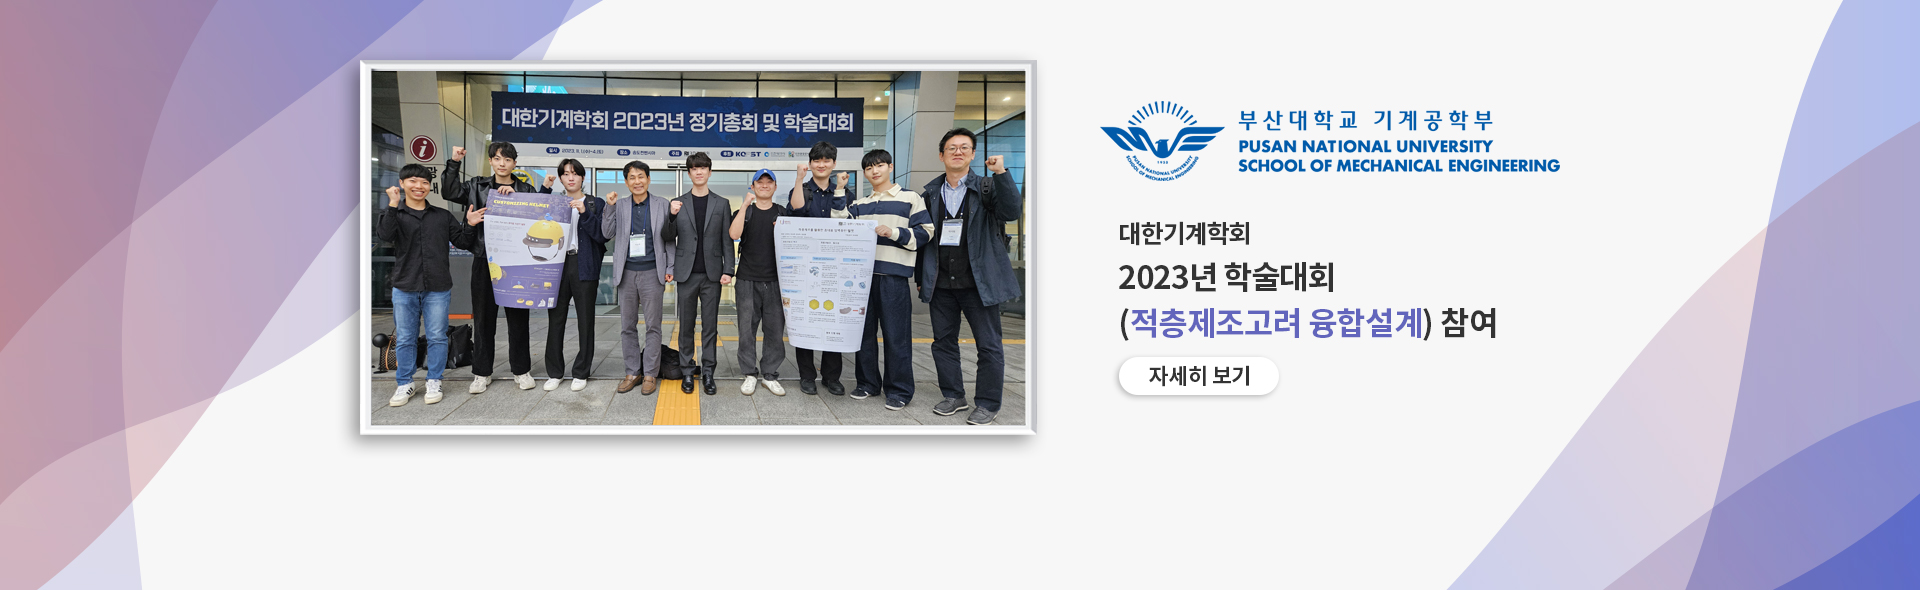 대한기계학회 2023 학술대회 (적층제조고려 융합설계) 참여